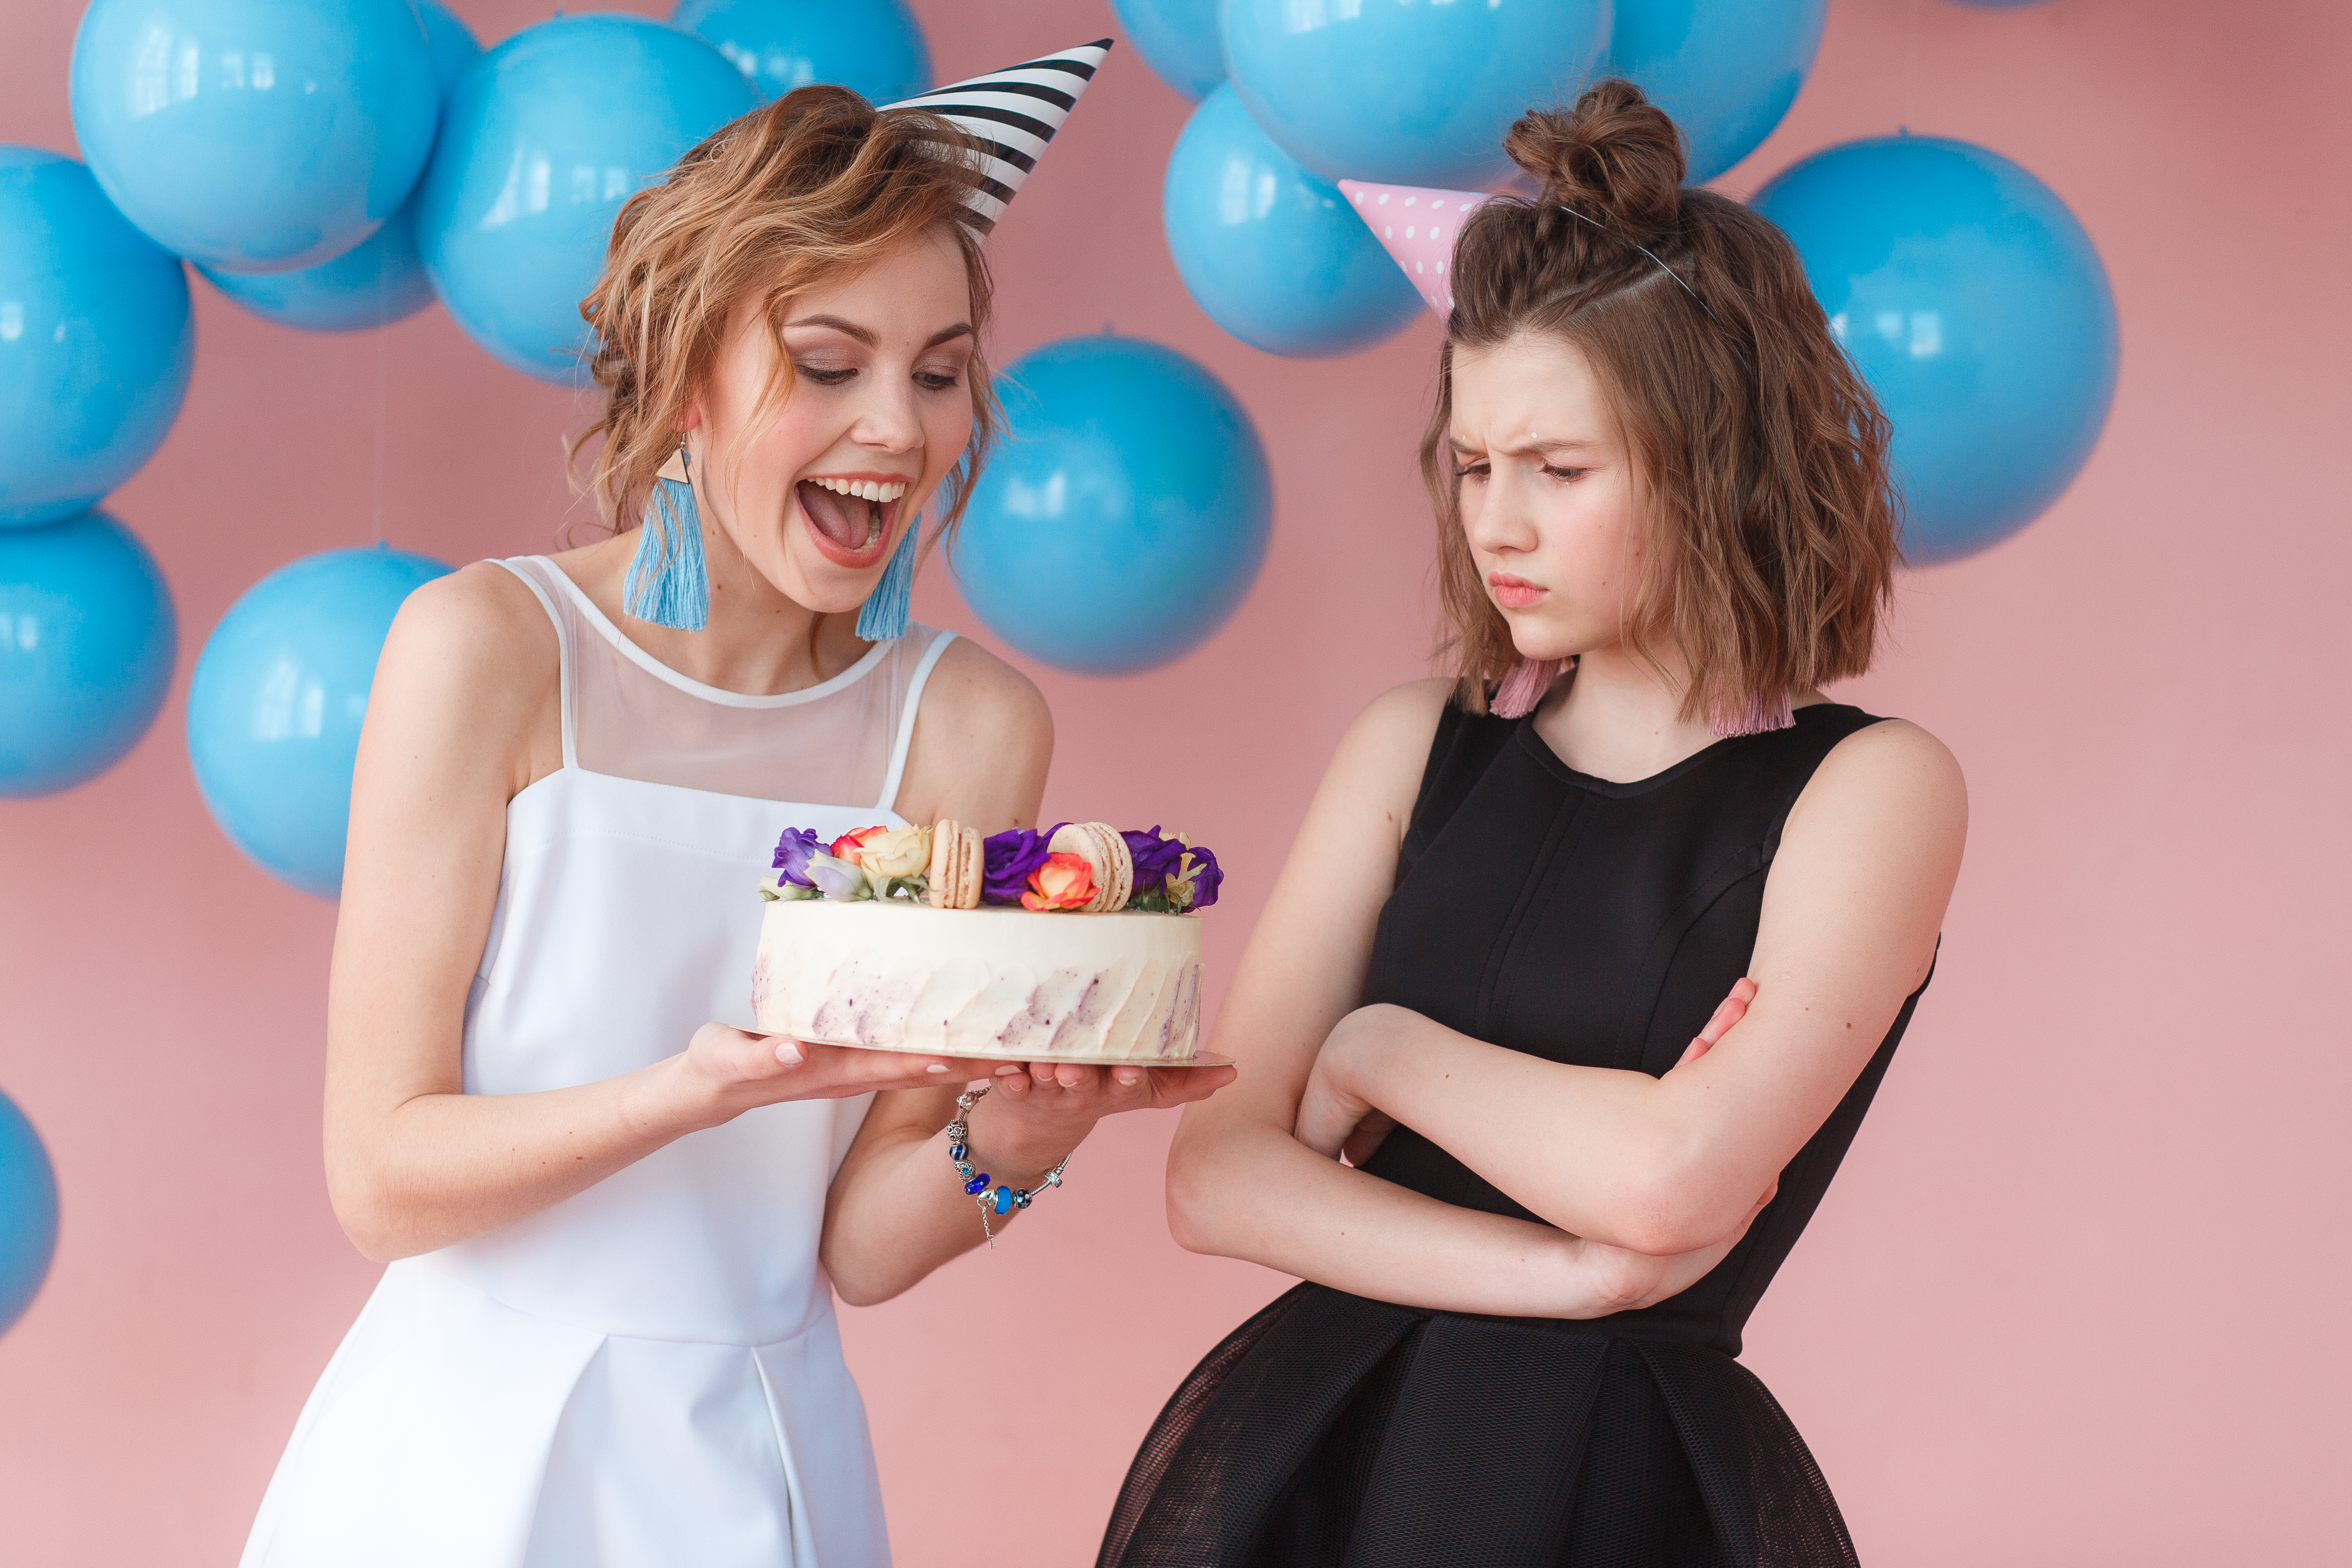 Zwei Teenager halten eine Geburtstagstorte, einer lächelt, der andere runzelt die Stirn | Quelle: freepic.diller auf Freepik